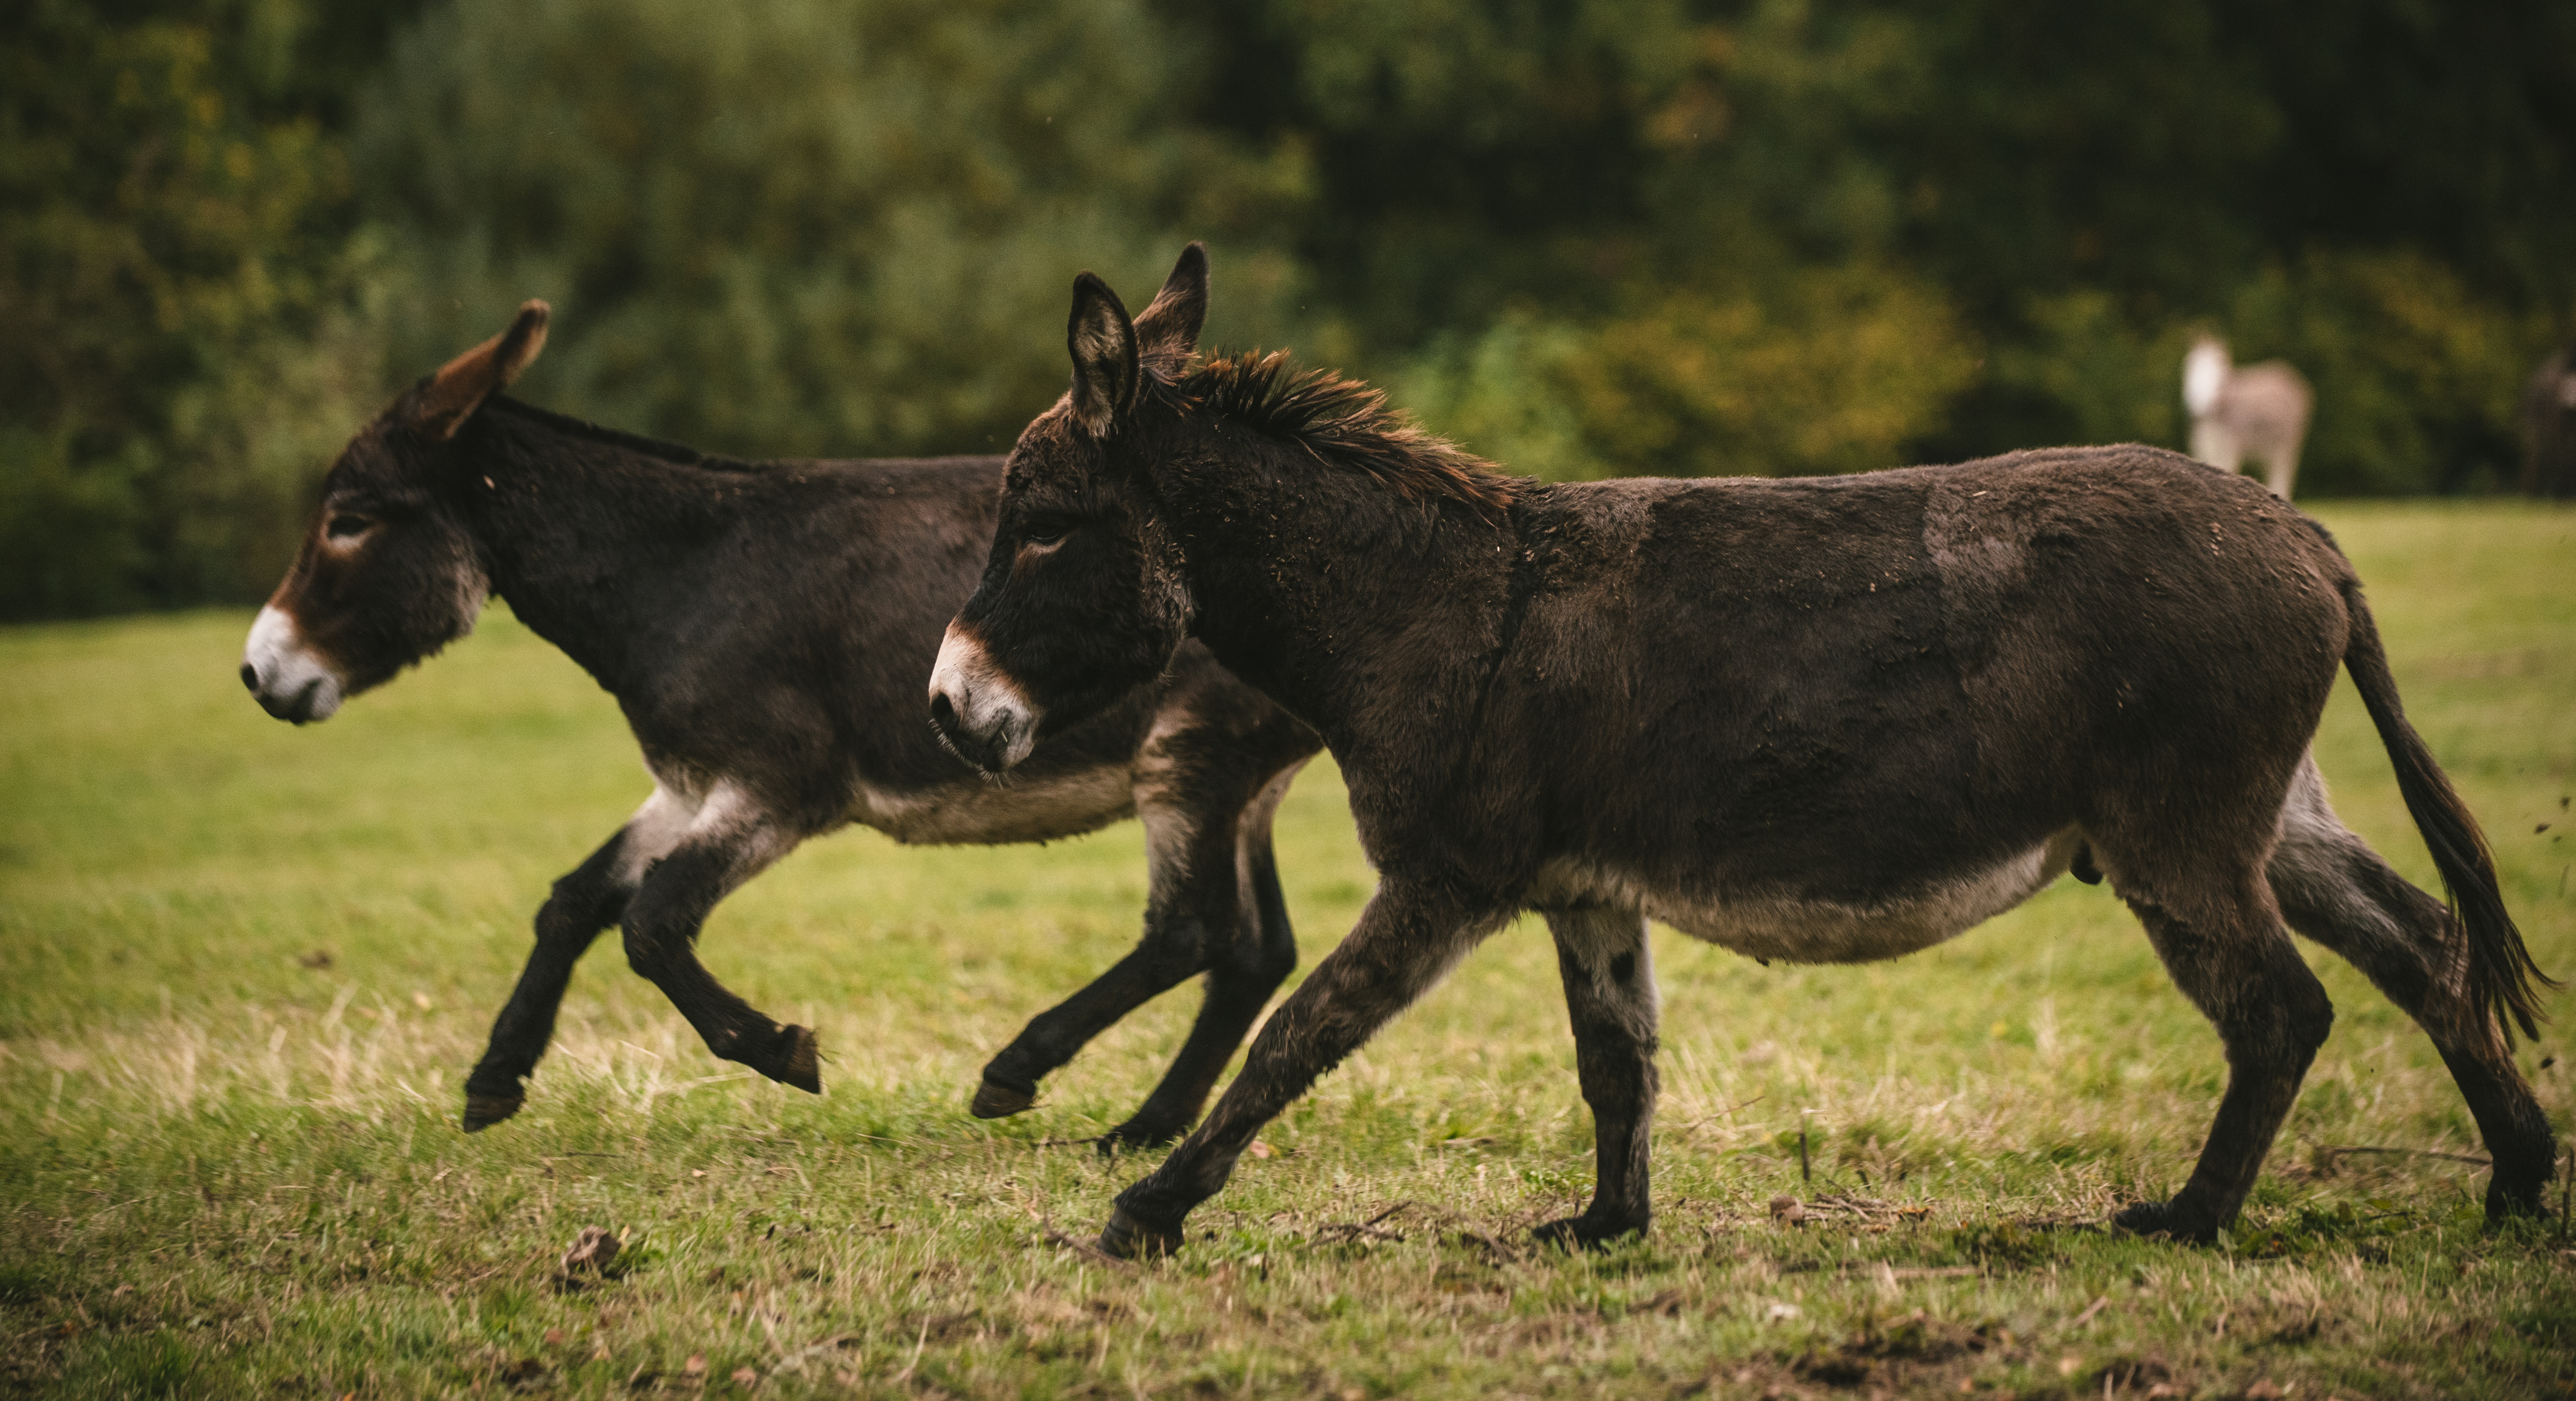 Donkeys galloping in field